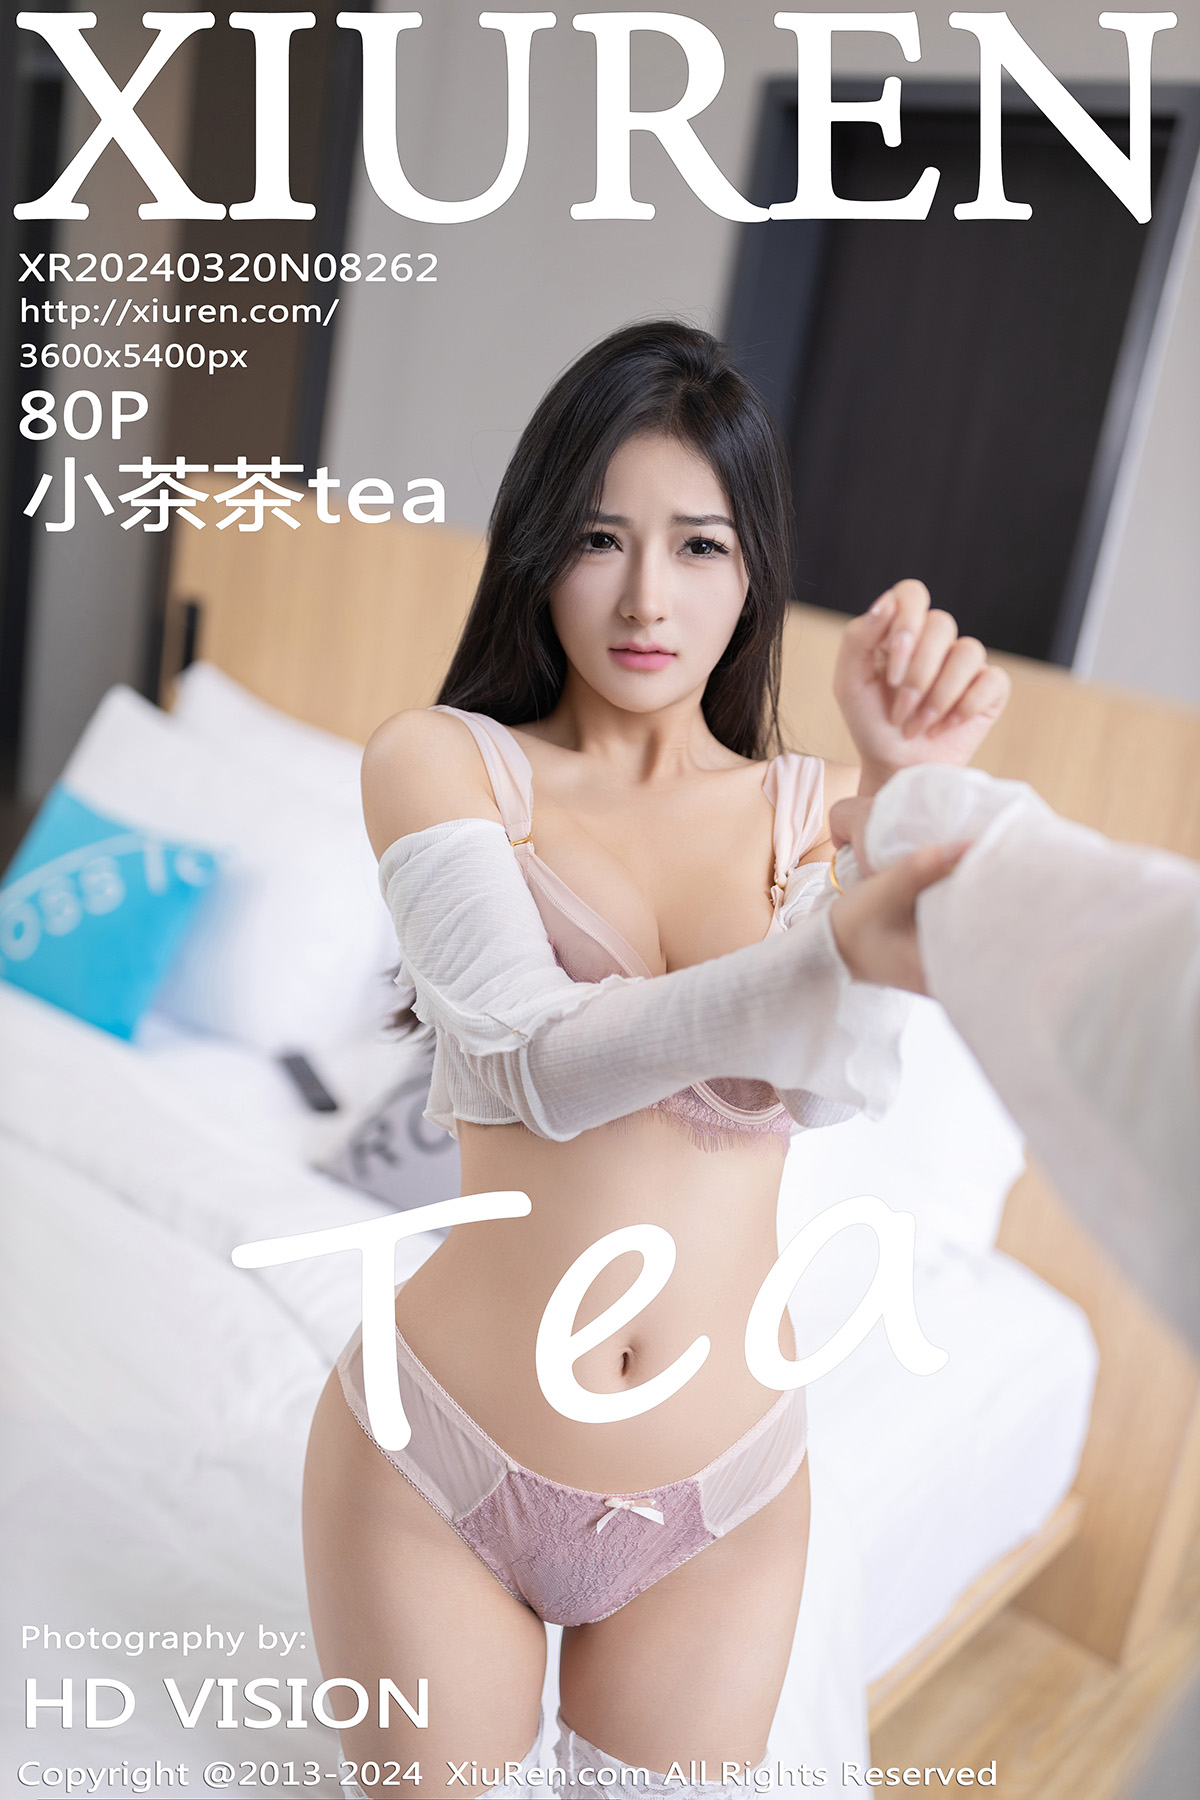 秀人 [XIUREN] 2024.03.20 小茶茶tea